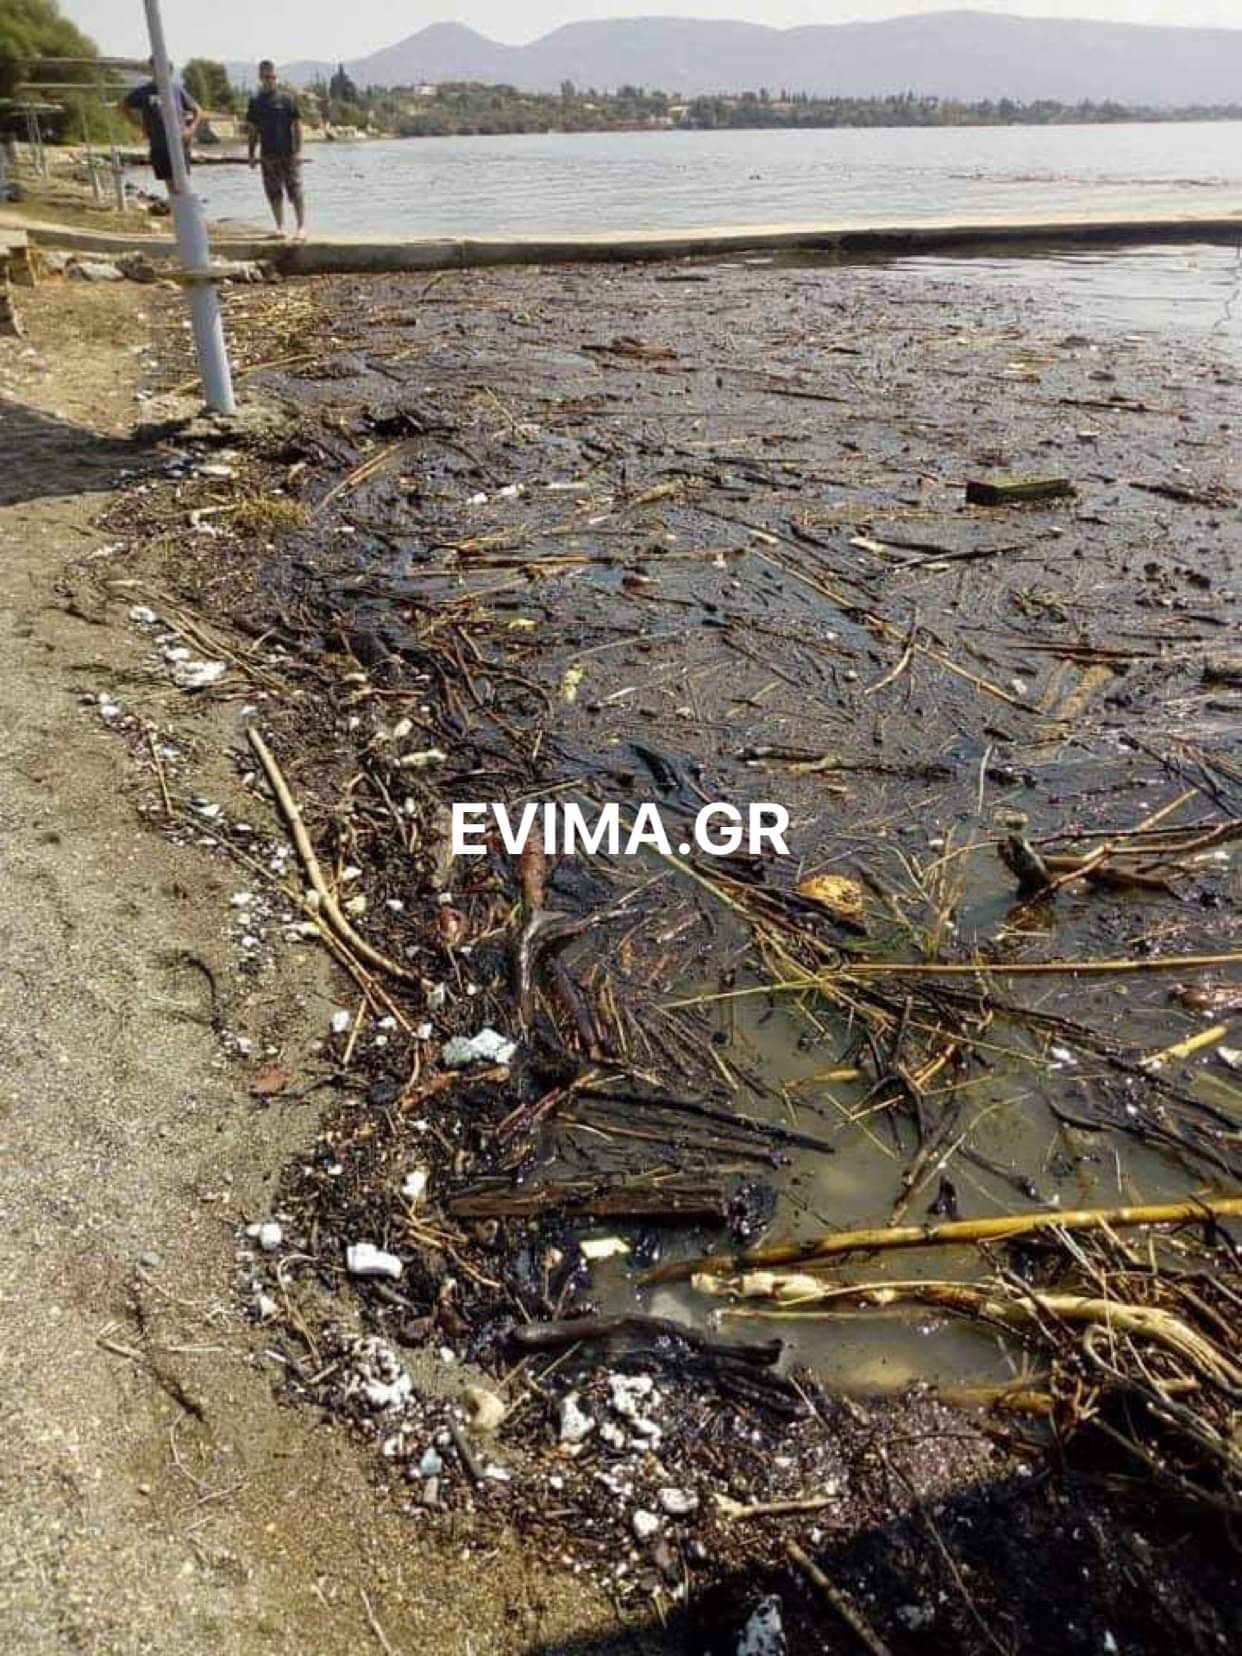 Λουόμενοι από την Ερέτρια στο evima: Οι παραλίες γέμισαν με φερτά υλικά – Ακατάλληλες για μπάνιο [εικόνες]